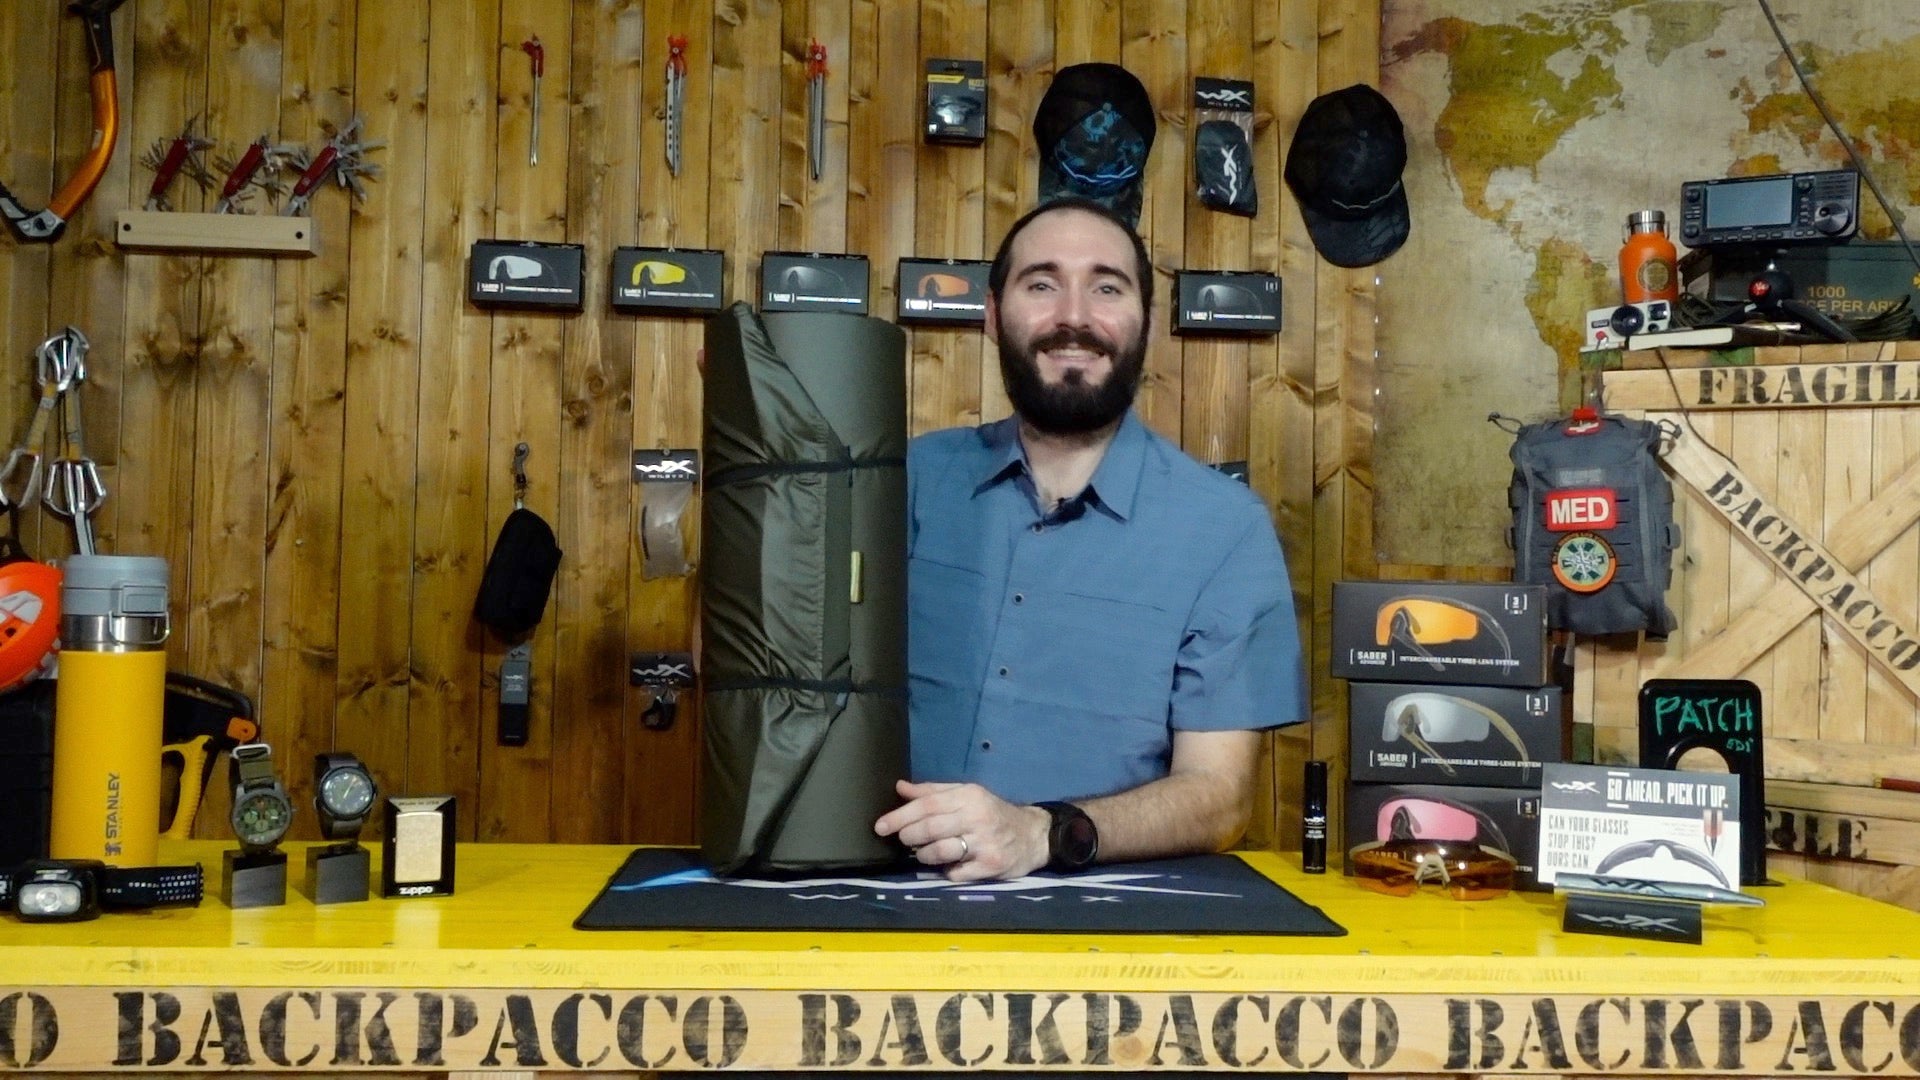 Paolo di backpacco spiega l'FDF Sleeping pad di Savotta